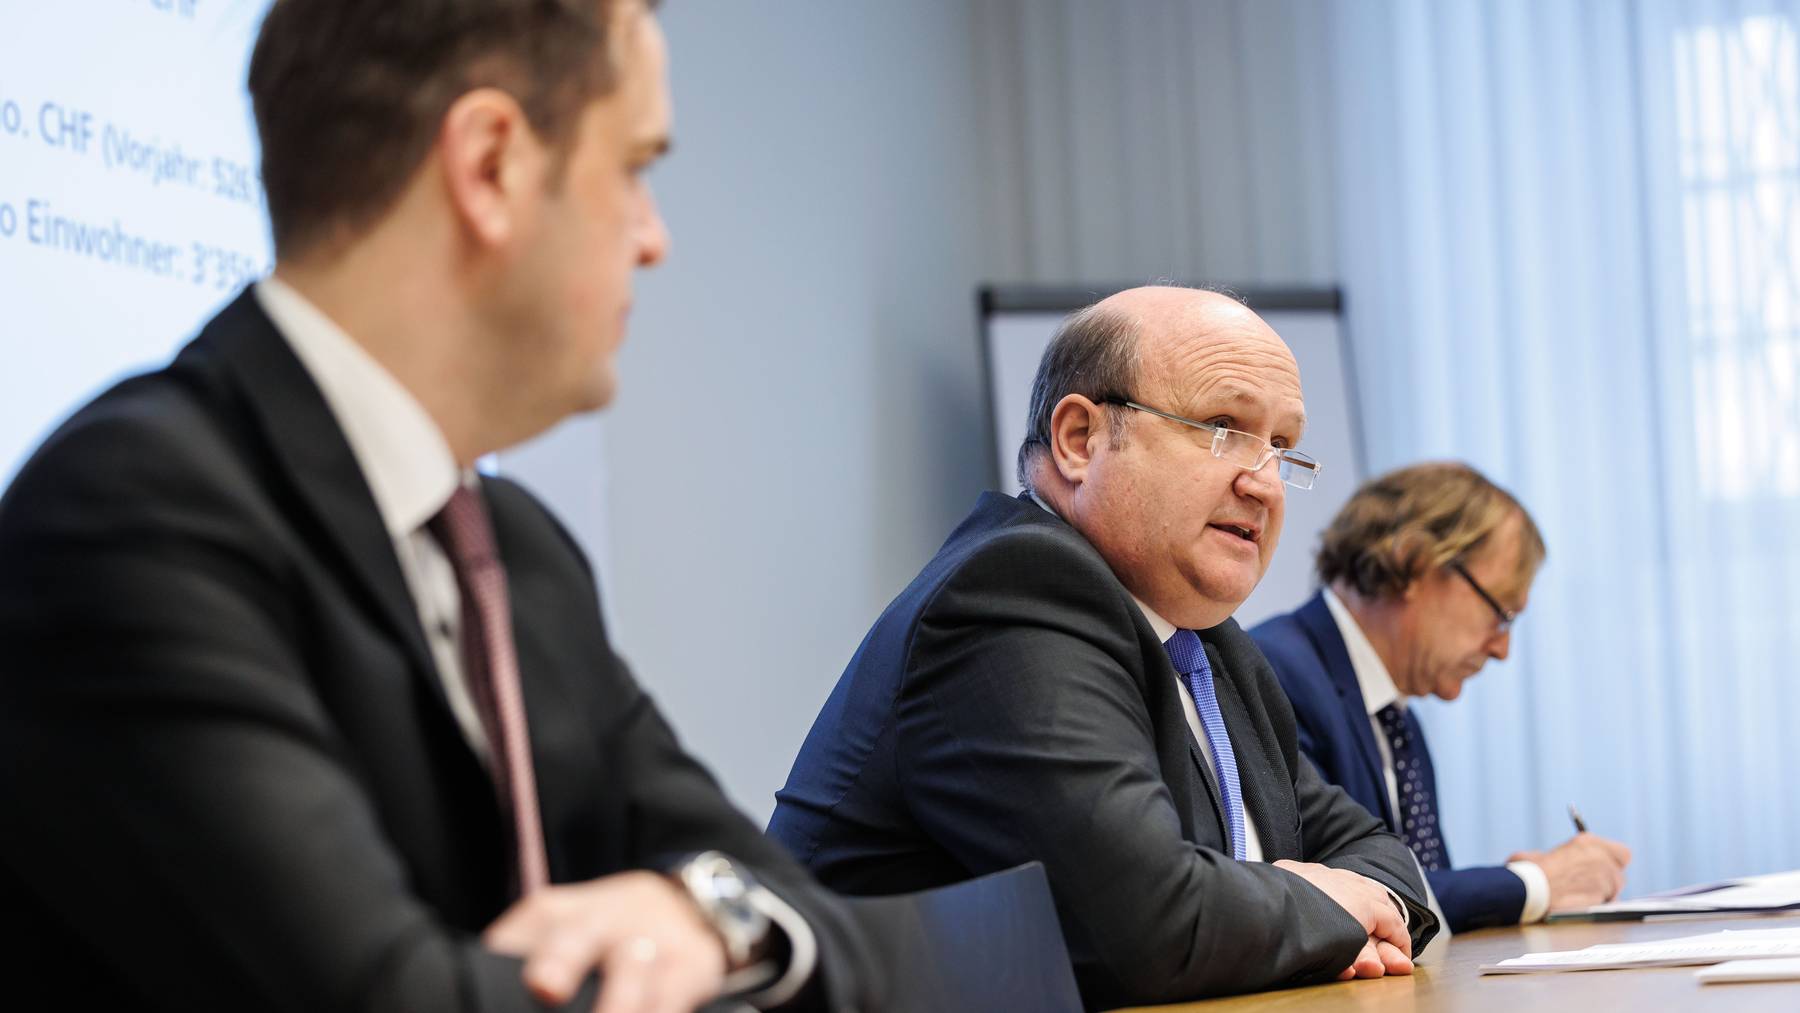 Solothurner Finanzdirektor stellt den Jahresabschluss 2022 vor